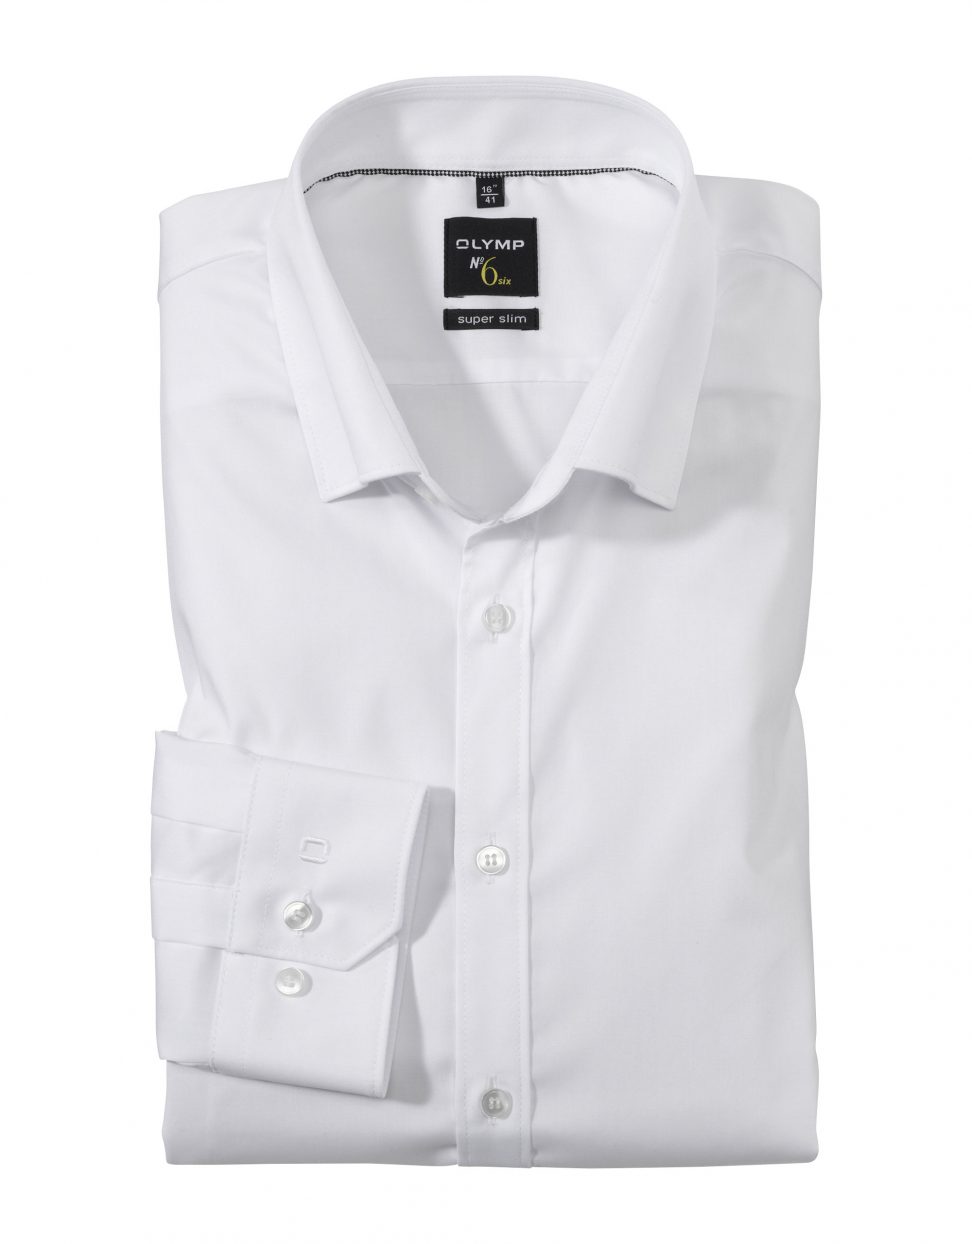 Koszula OLYMP No. Six, super slim, biała / Under button-down / 04366400